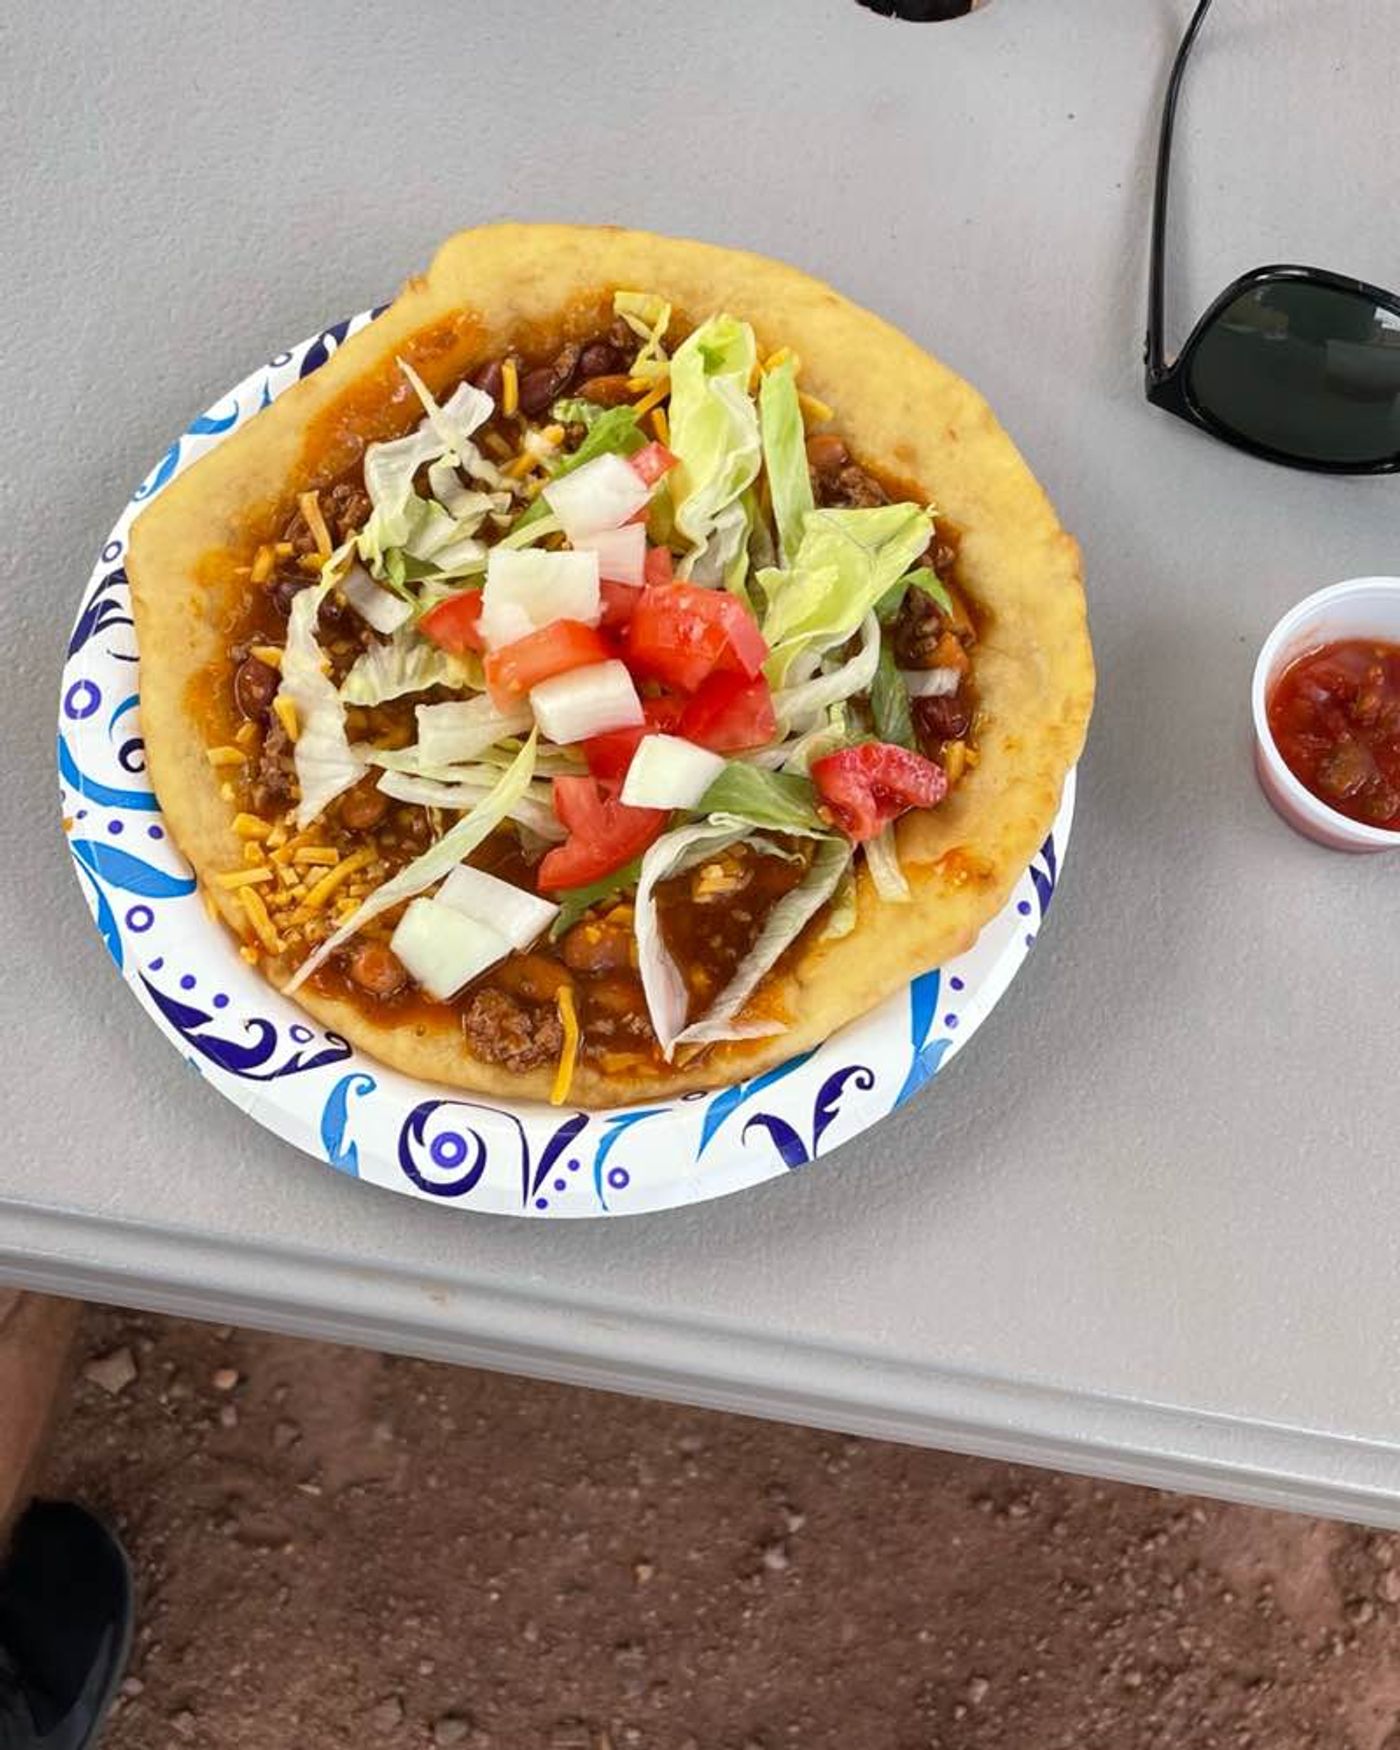 Native Grill Food Truck - Navajo Tacos 🌮 